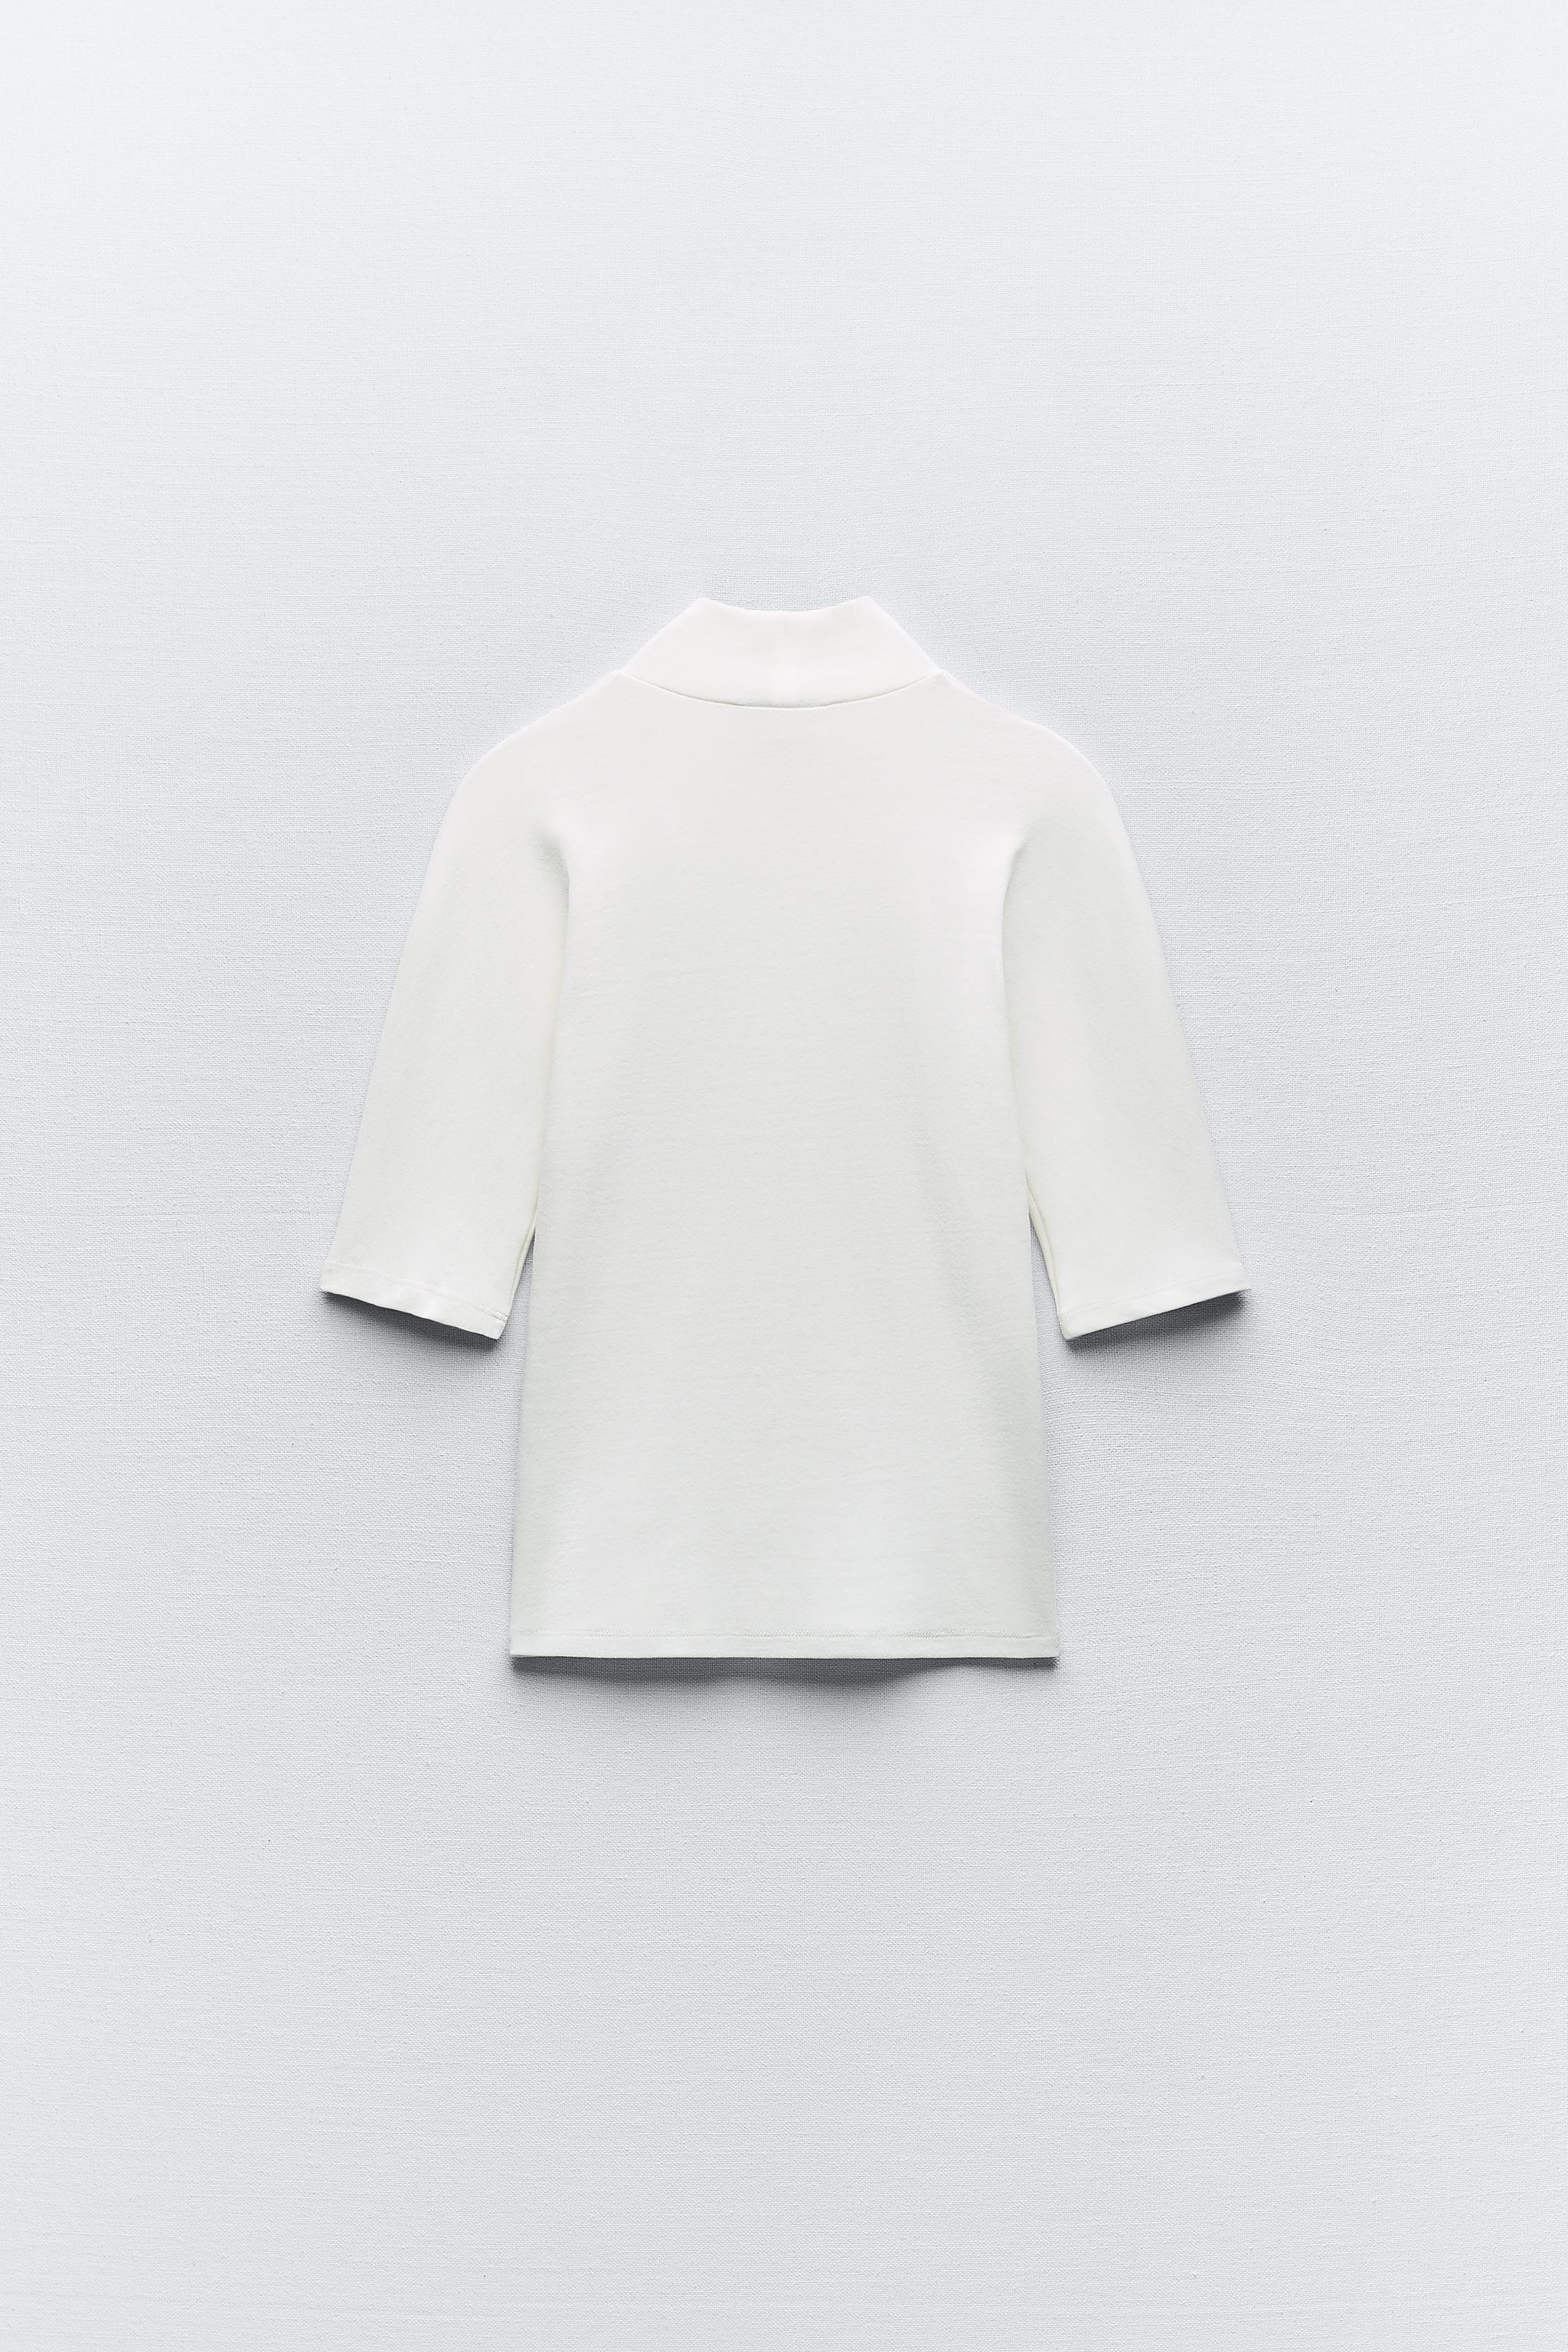 Plus size zara formal cotton pants and cotton white T-shirt mandanifas